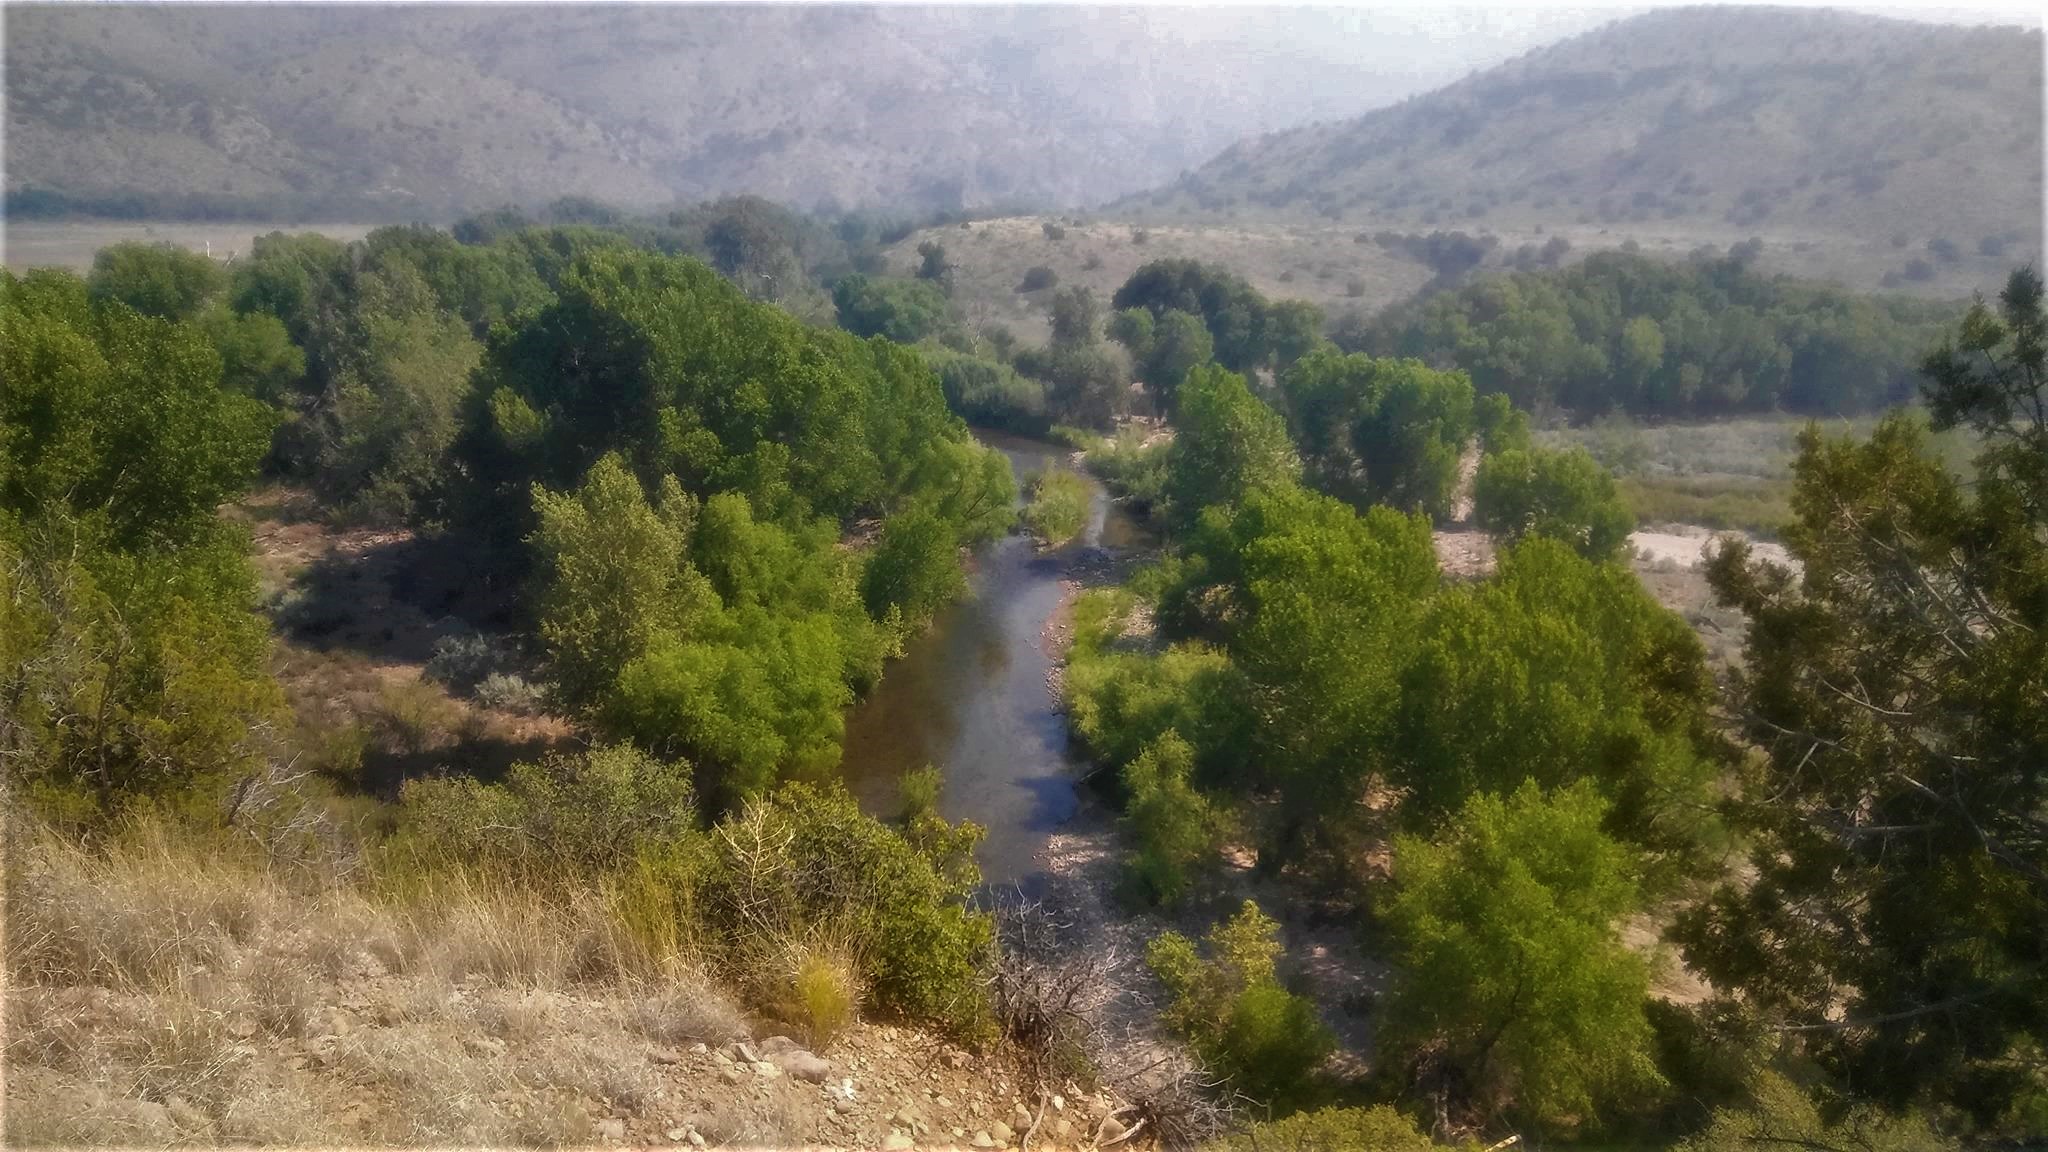 The Gila River